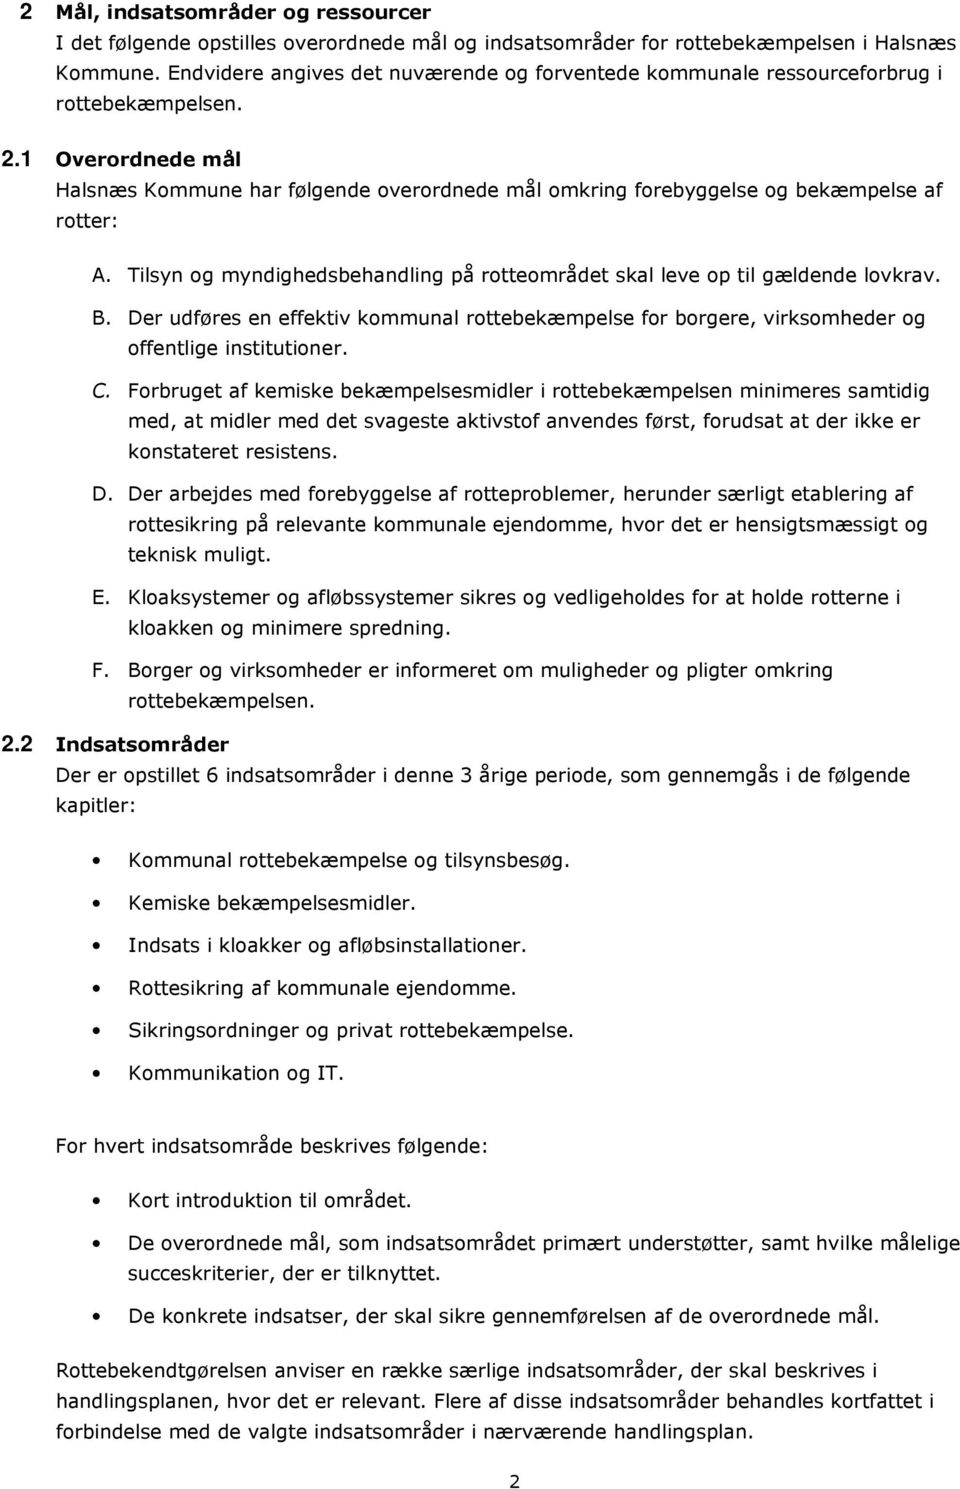 1 Overordnede mål Halsnæs Kommune har følgende overordnede mål omkring forebyggelse og bekæmpelse af rotter: A. Tilsyn og myndighedsbehandling på rotteområdet skal leve op til gældende lovkrav. B.